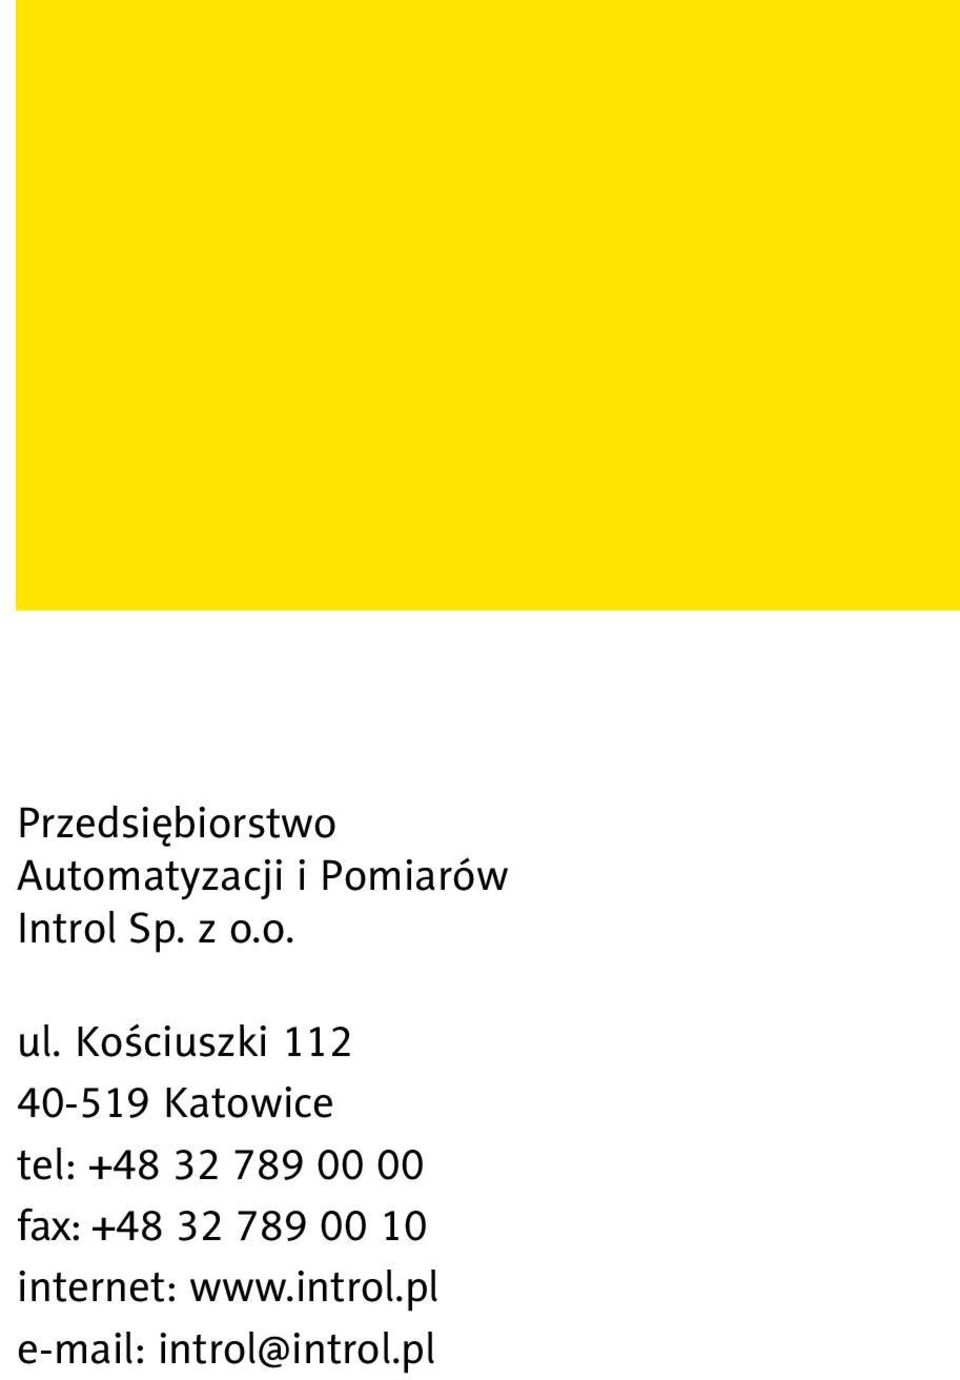 Kościuszki 112 40-519 Katowice tel: +48 32